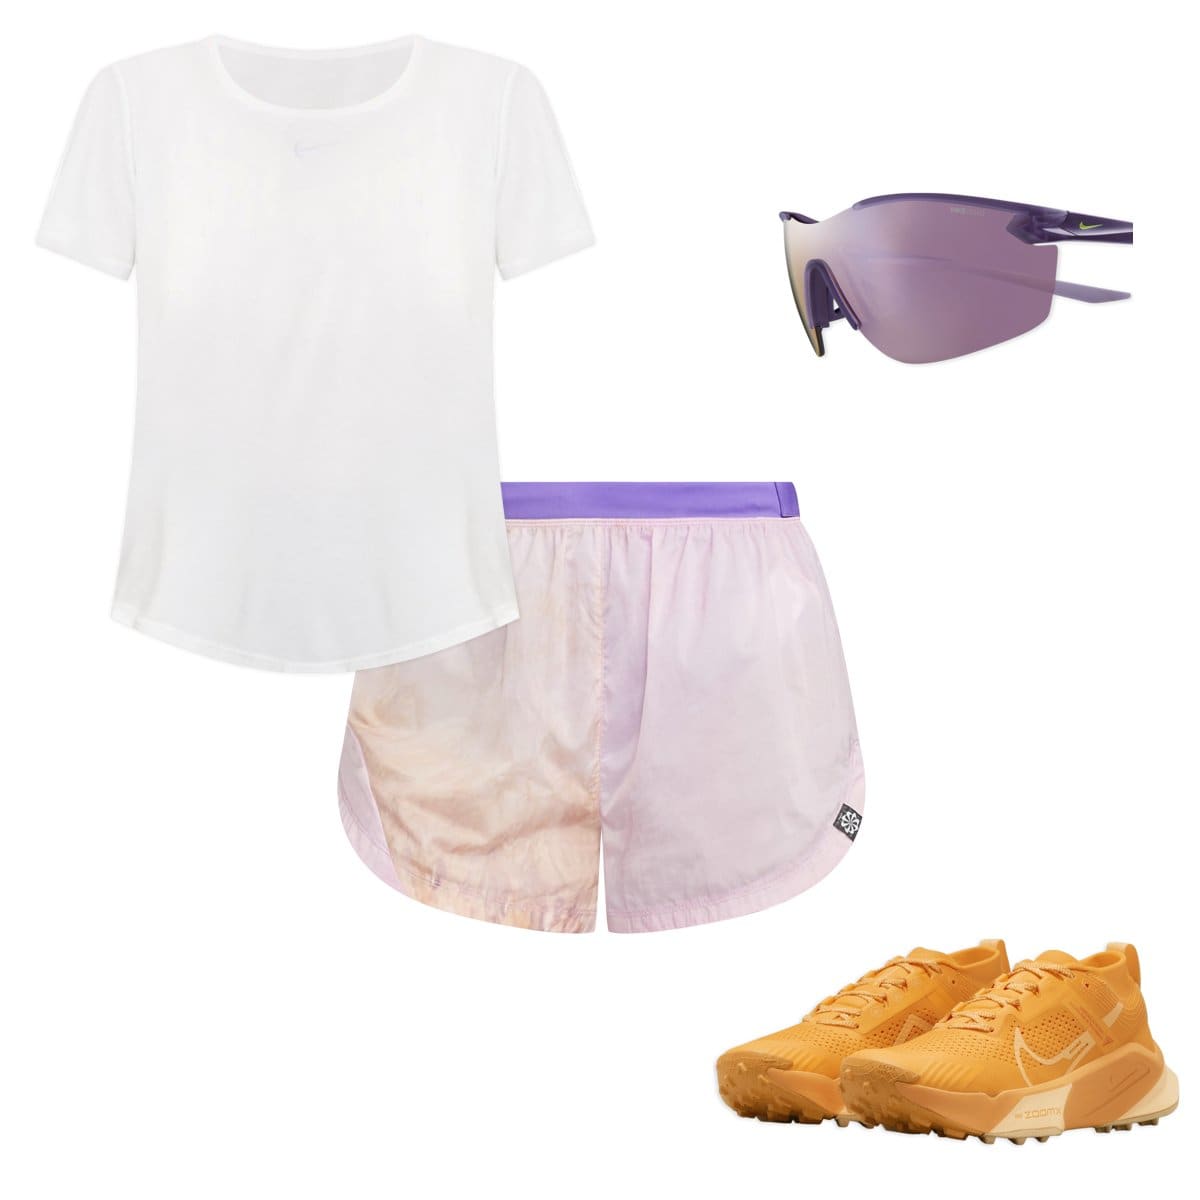 Hiking outfit  Hiking outfit, Summer hiking outfit women, Summer hiking  outfit